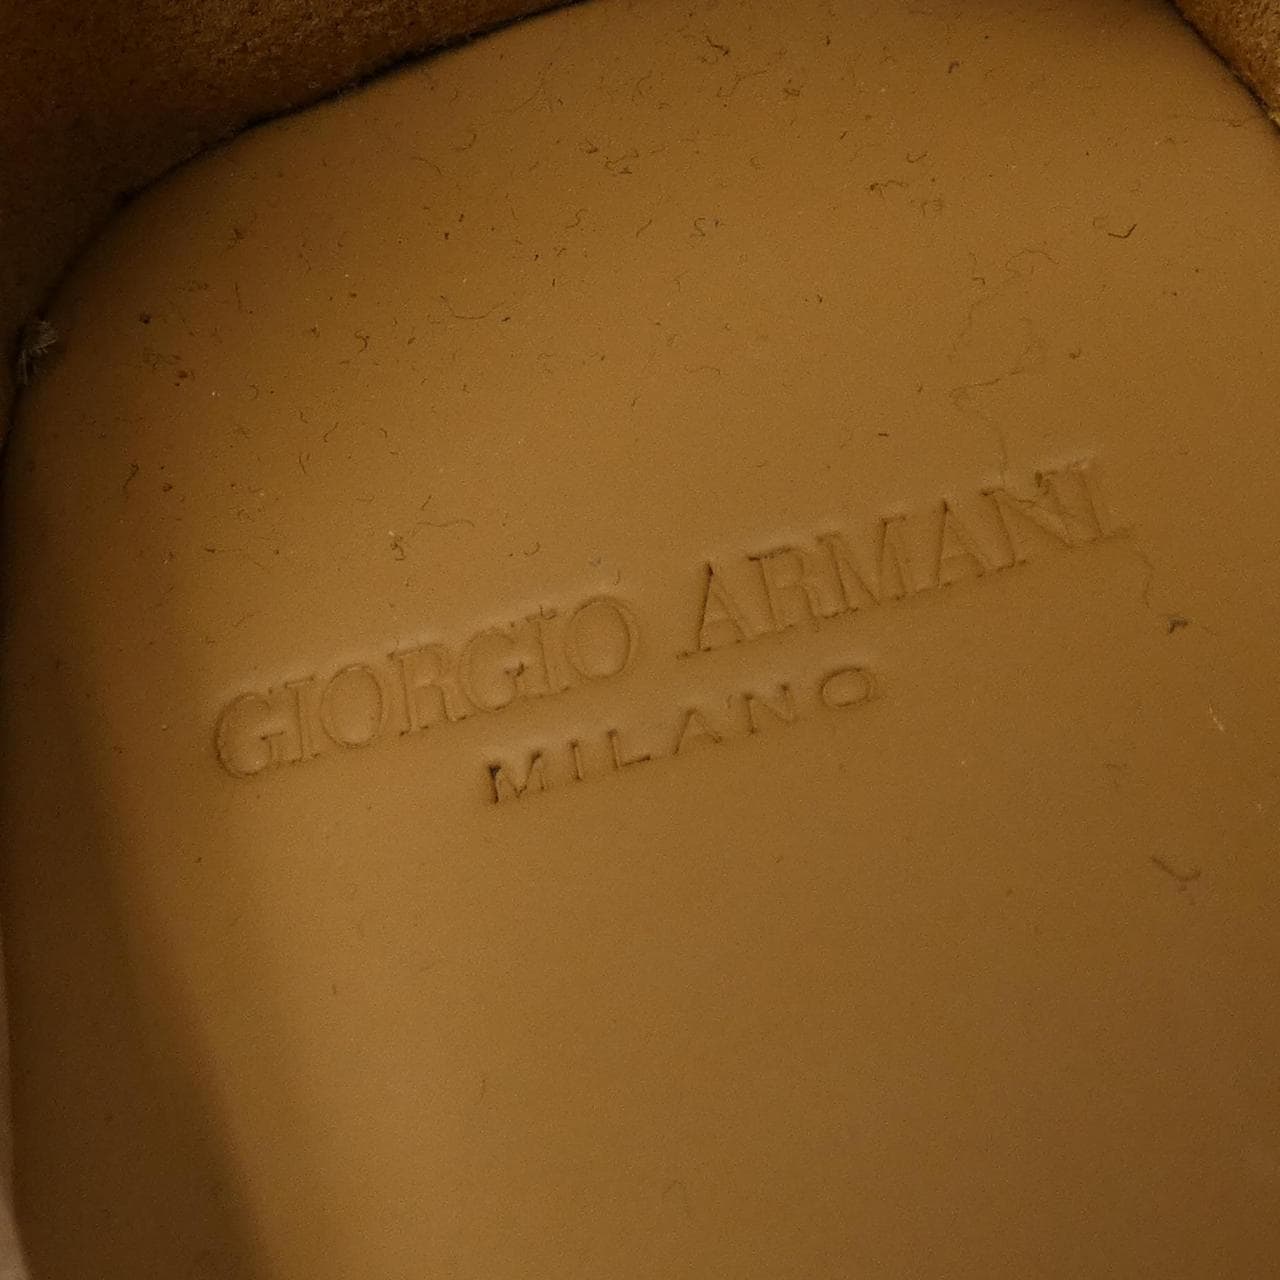 Giorgio Armani GIORGIO ARMANI shoes